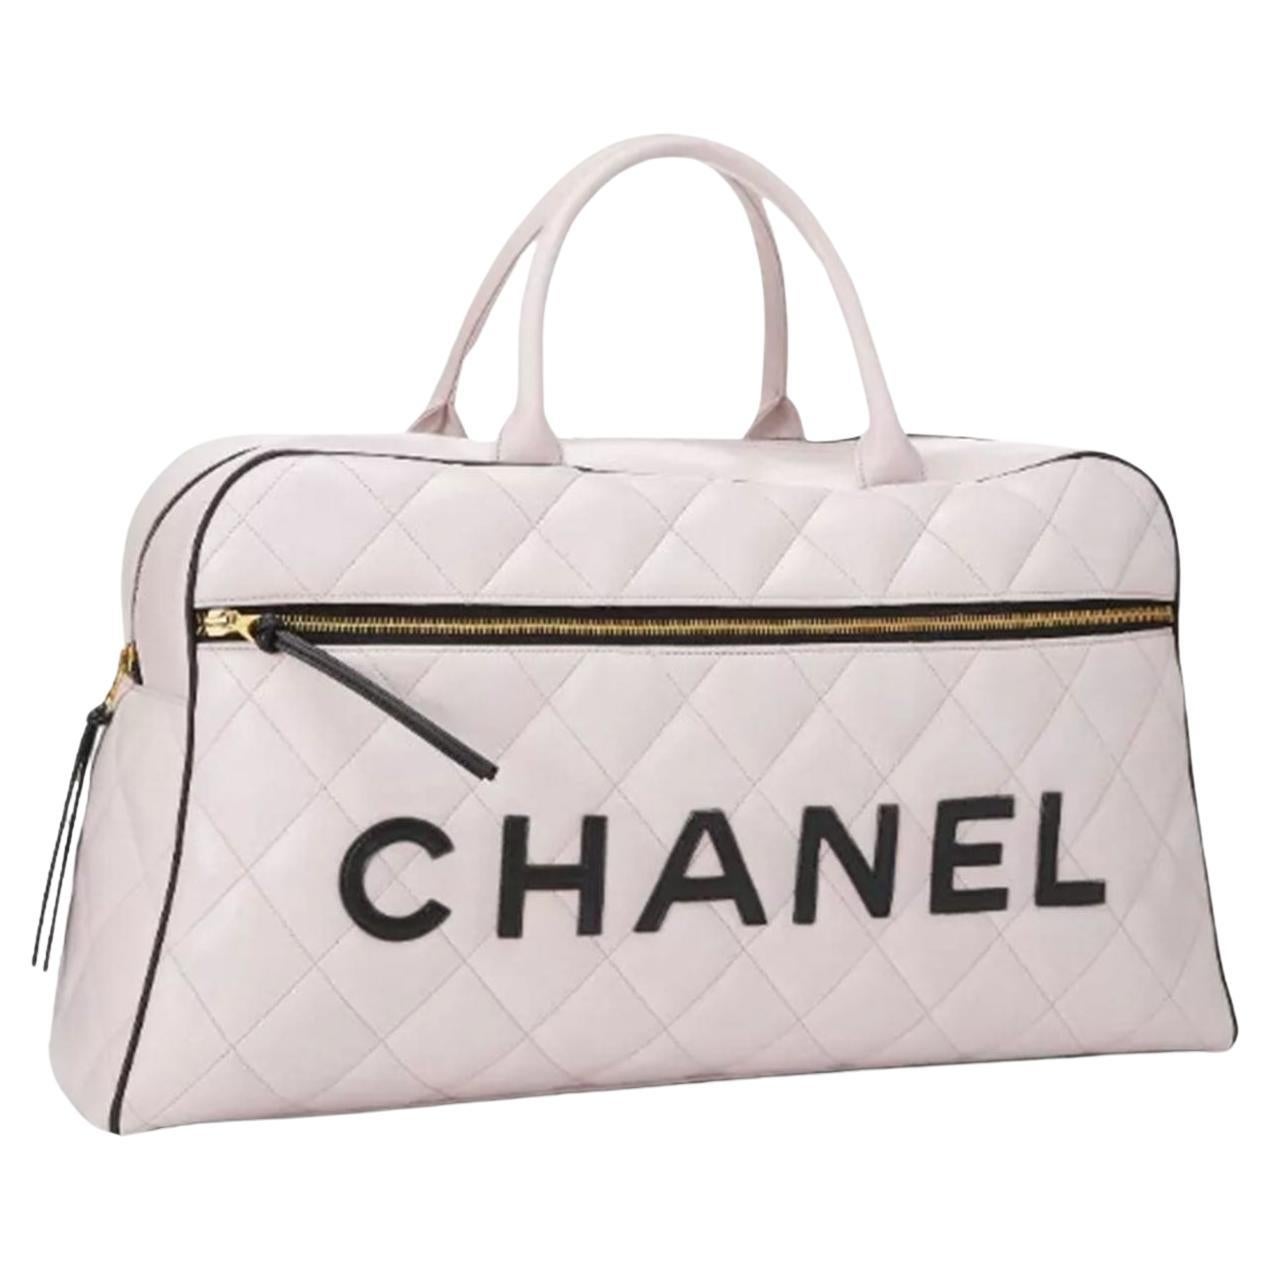 Sac de voyage Chanel Duffel en cuir blanc et noir, édition limitée